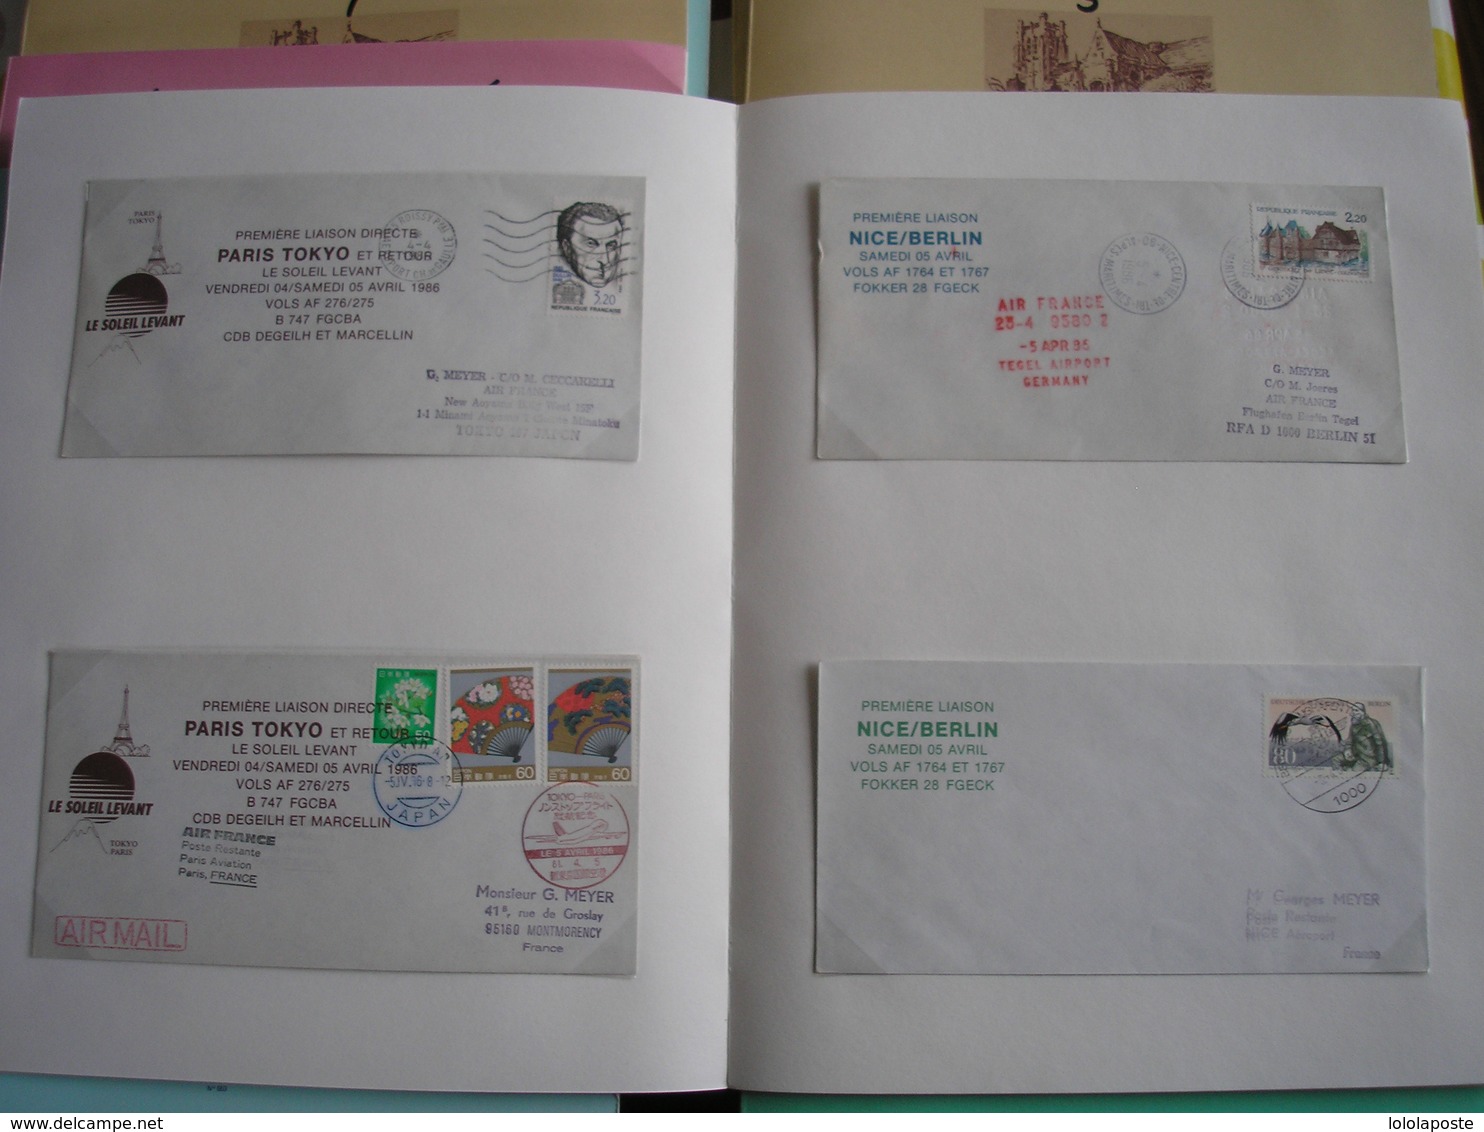 Collection en 8 cahiers de 281 documents d'aéro-philatélie de 1976/89 - 1er vols, doc. exceptionnels + divers..14 photos